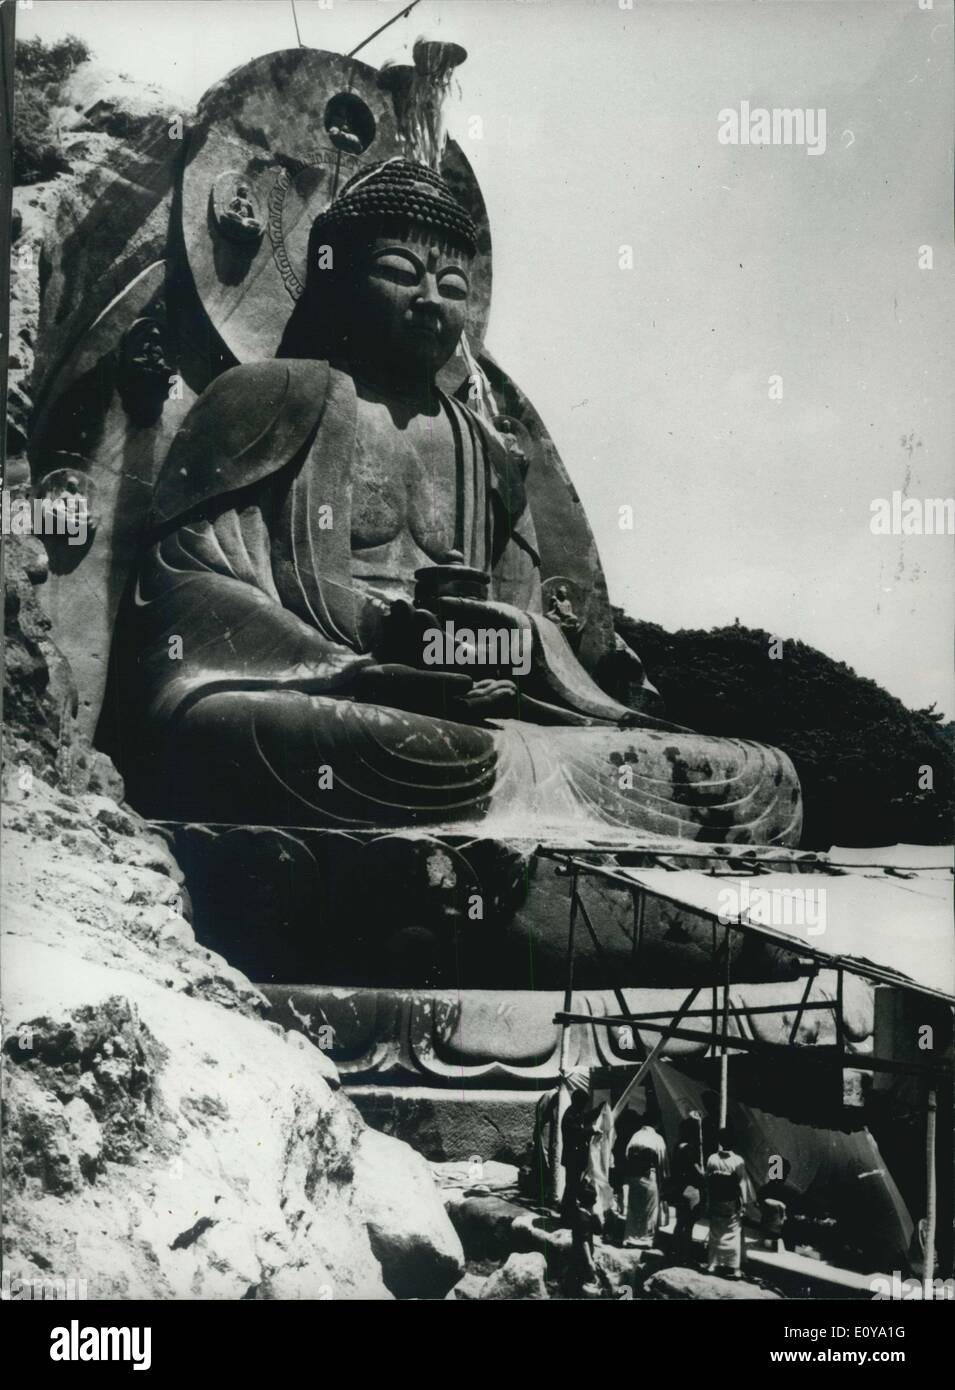 16 de junio de 1969 - Gran Buda tallado en un acantilado japonés; UN daibutsu, o gran imagen de Buda de 31.5 metros de altura, esculpido en la cara de un acantilado cerca del templo Nippenji en el Monte Nokogiri en la prefectura de Chiba de Japón Central, Fue desvelado la semana pasada con ritos religiosos por Zen PR el gigante Buda nuevo el más grande en Japón, se llama ''Yakusha Ruriko Nyorai'' o el Buda de piedra azul claro debido al color del acantilado desde el que fue tallado. La escultura japonesa Kyoji Yatsuyanagi comenzó su gigantesca obra en agosto de 196 y completó el Budah después de 5,000 días a un costo de 60 Foto de stock